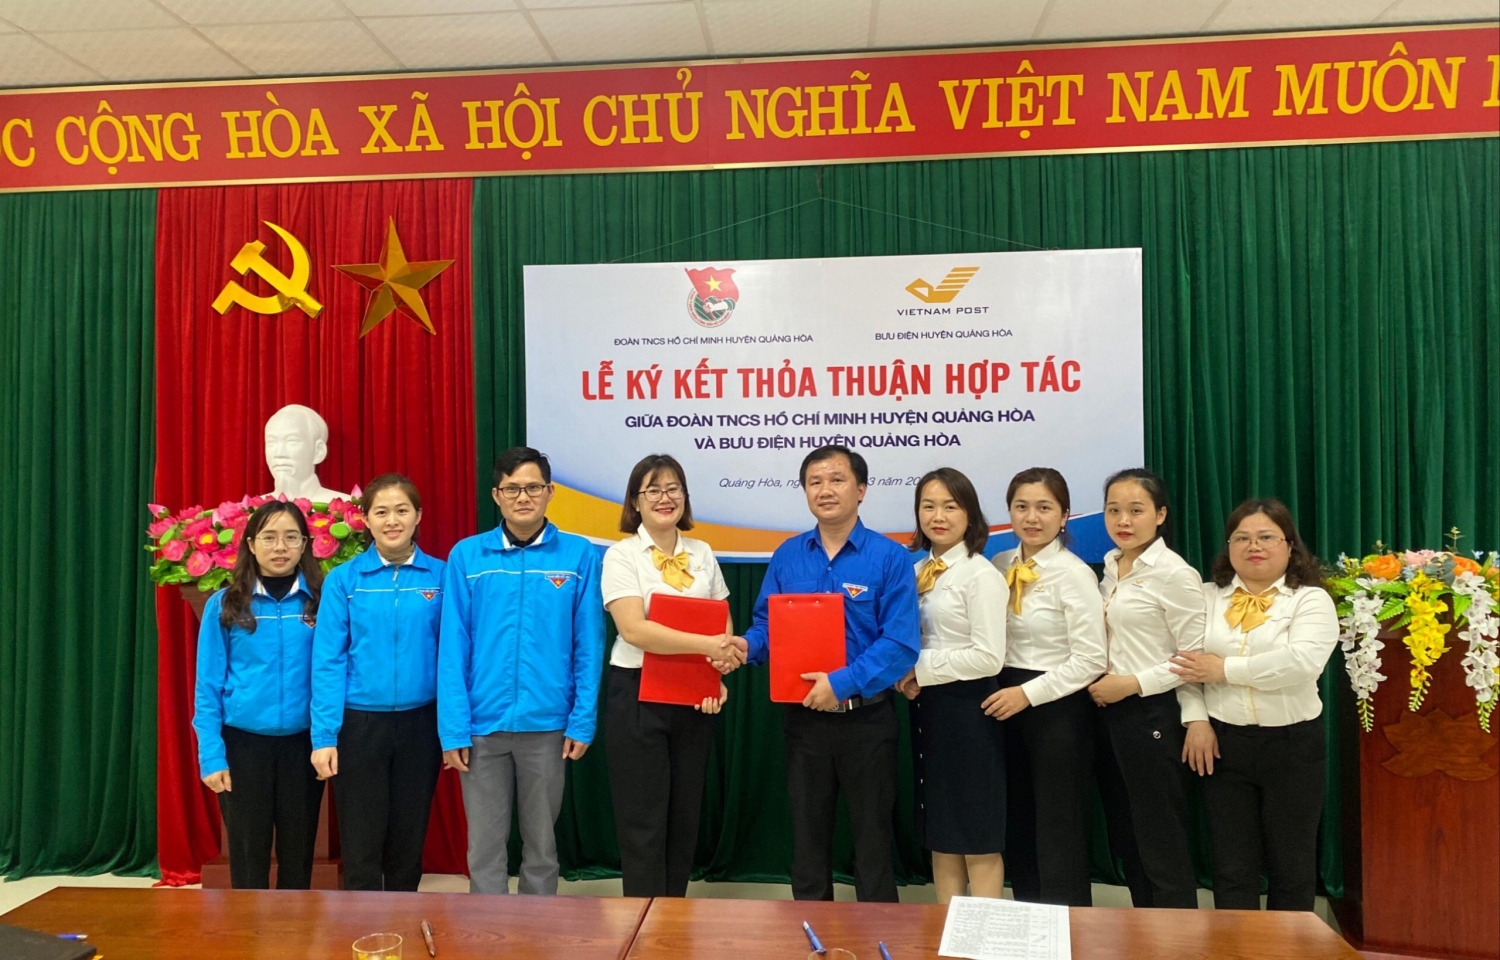 Huyện Đoàn Quảng Hòa và Bưu điện huyện Quảng Hòa ký kết thỏa thuận hợp tác